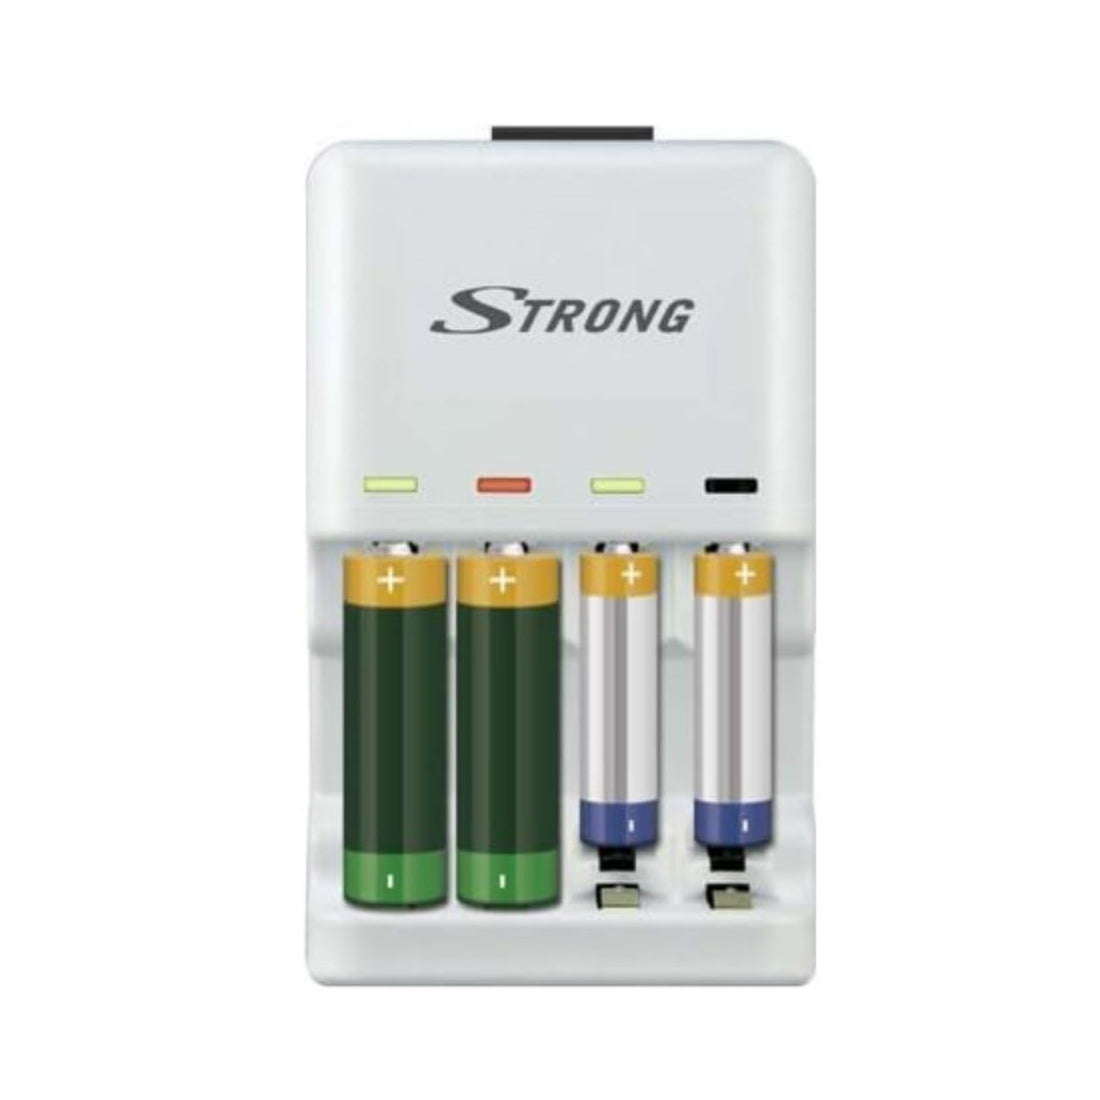 Strong Caricatore per batterie e accumulatori, caricabatterie per pile e accumulatori, batterie alkaline usa e getta AA - AAA